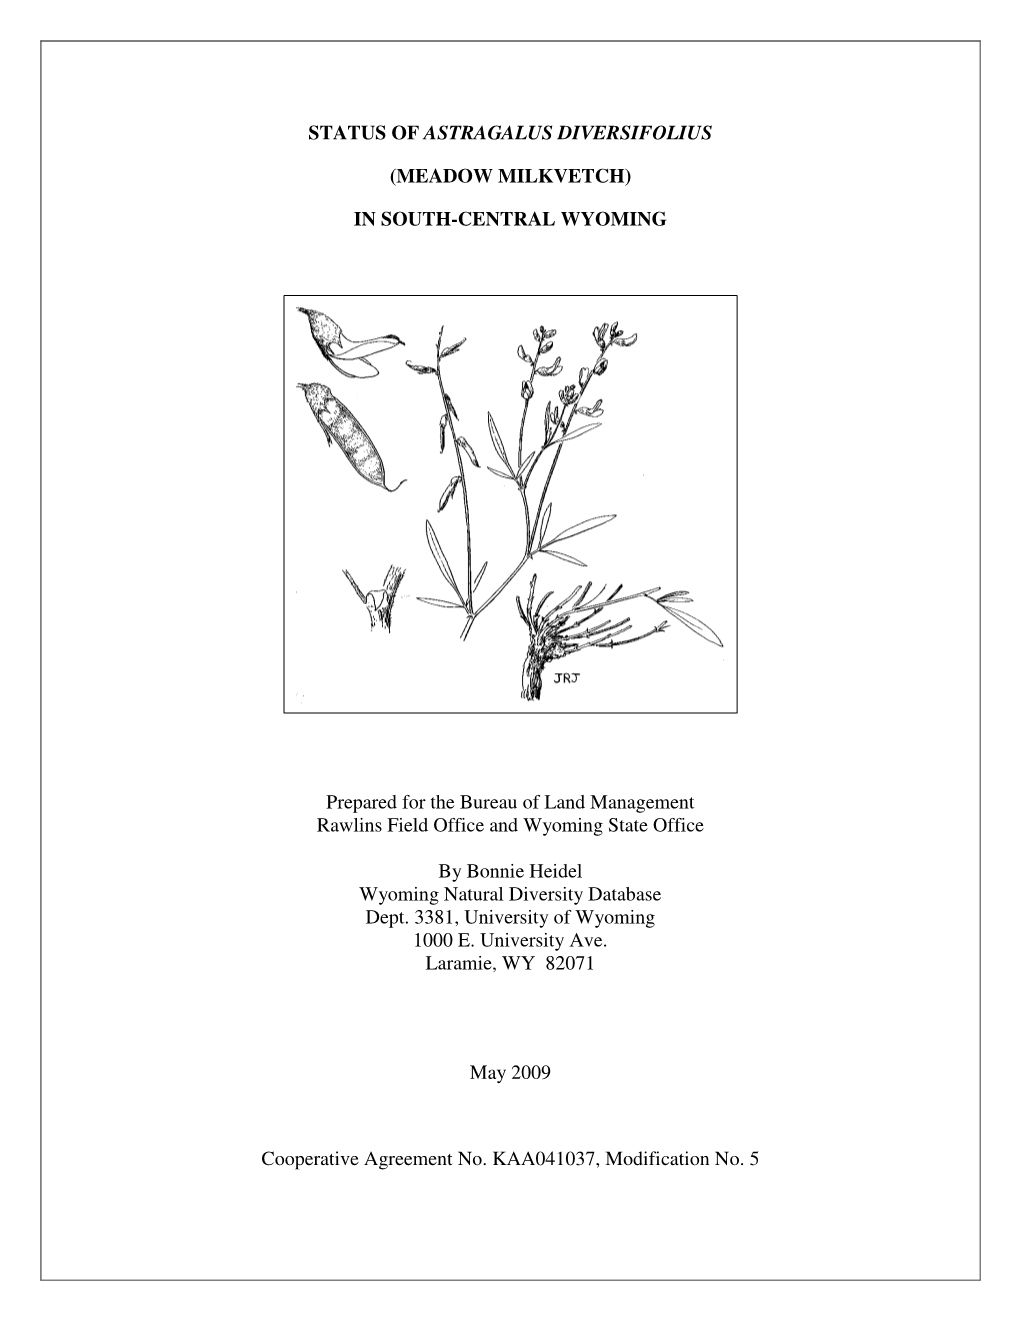 Status of Astragalus Diversifolius (Meadow